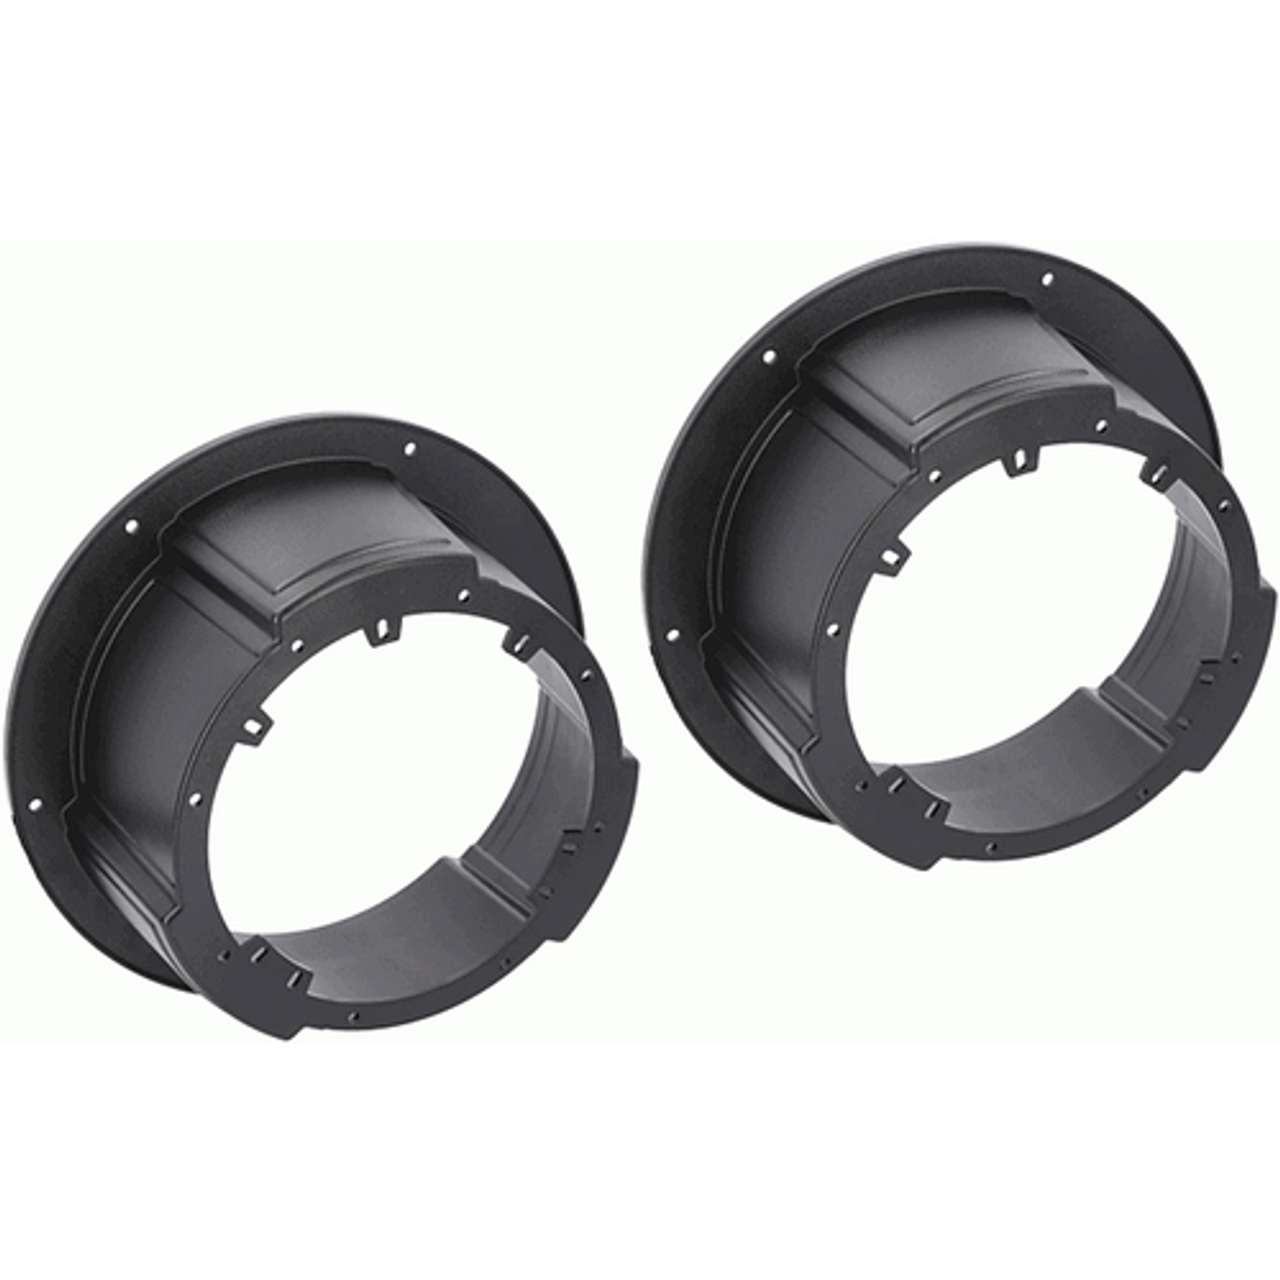 Metra - Universal Speaker Adapter for 6.5” or 6.75” Speakers (2-Pack) - Black